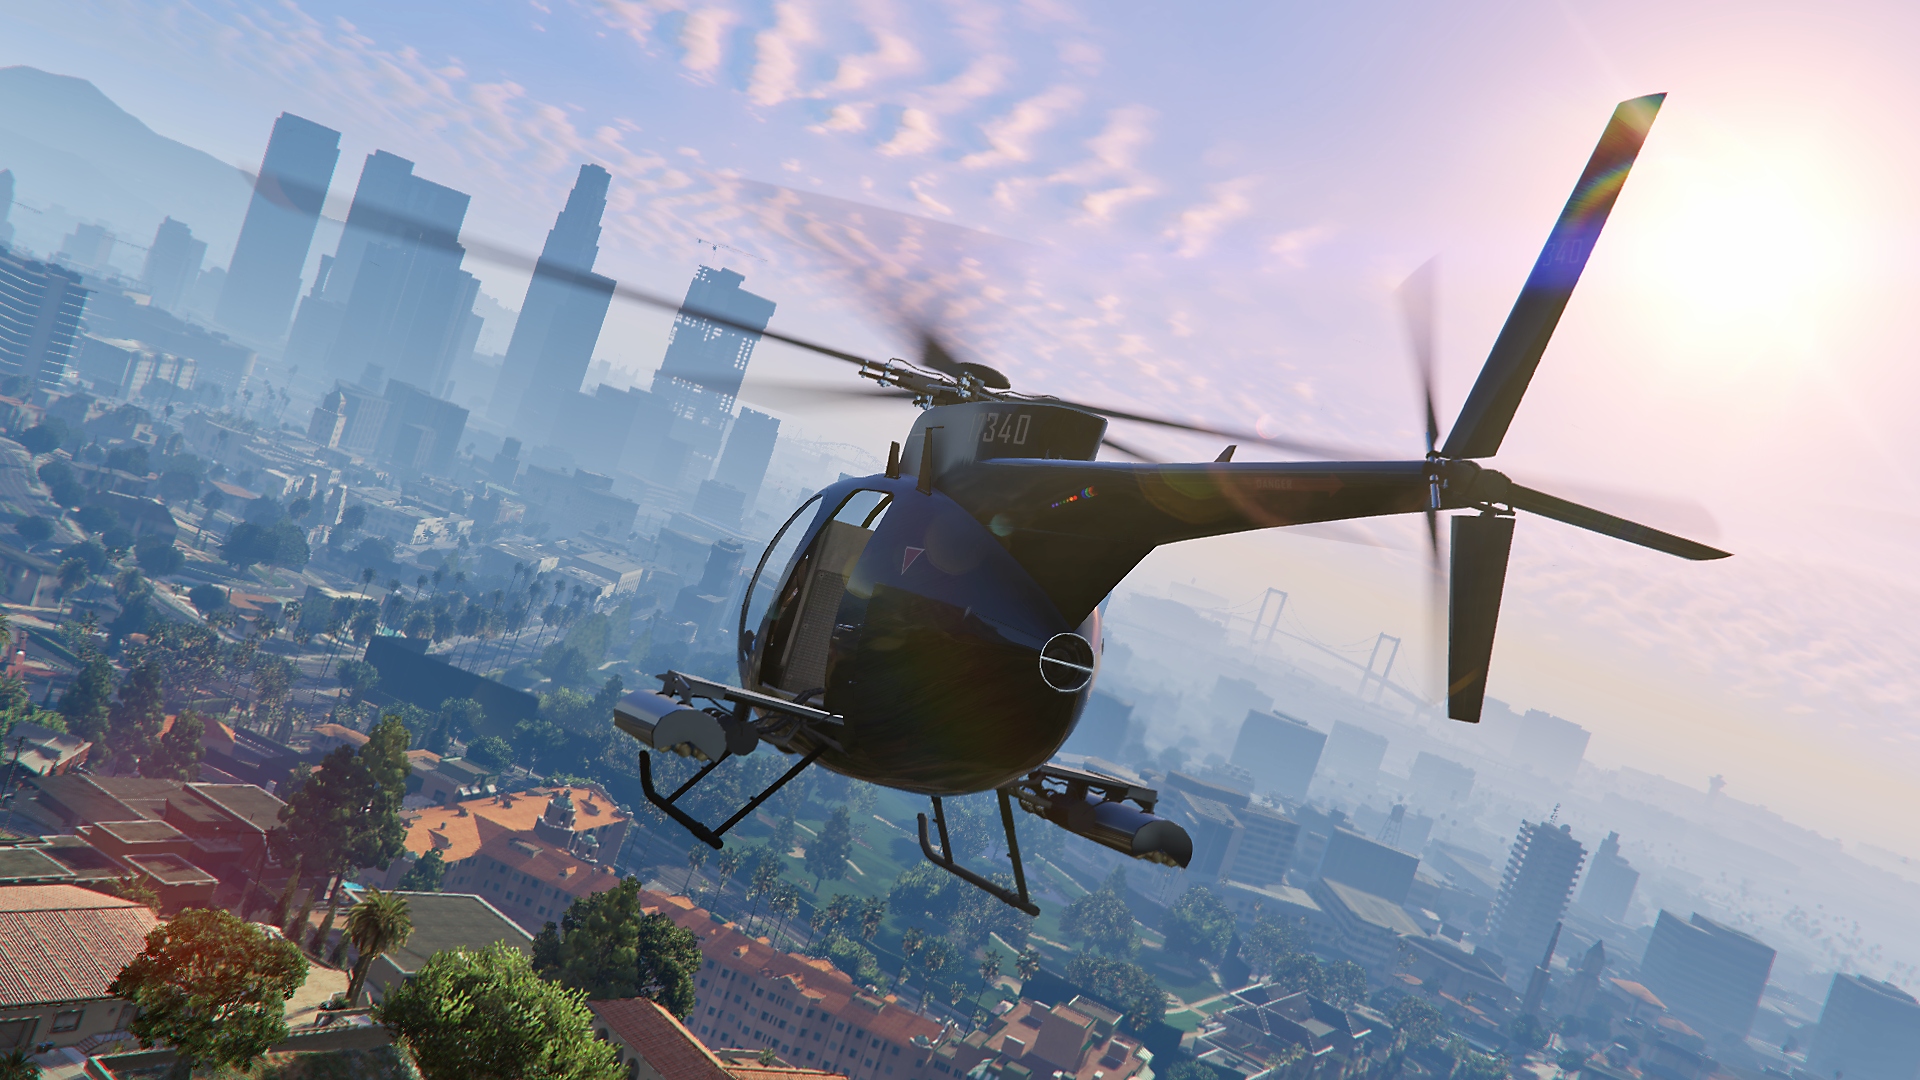 Grand Theft Auto V - Istantanea della schermata che mostra un elicottero in volo, con lo skyline della città in lontananza